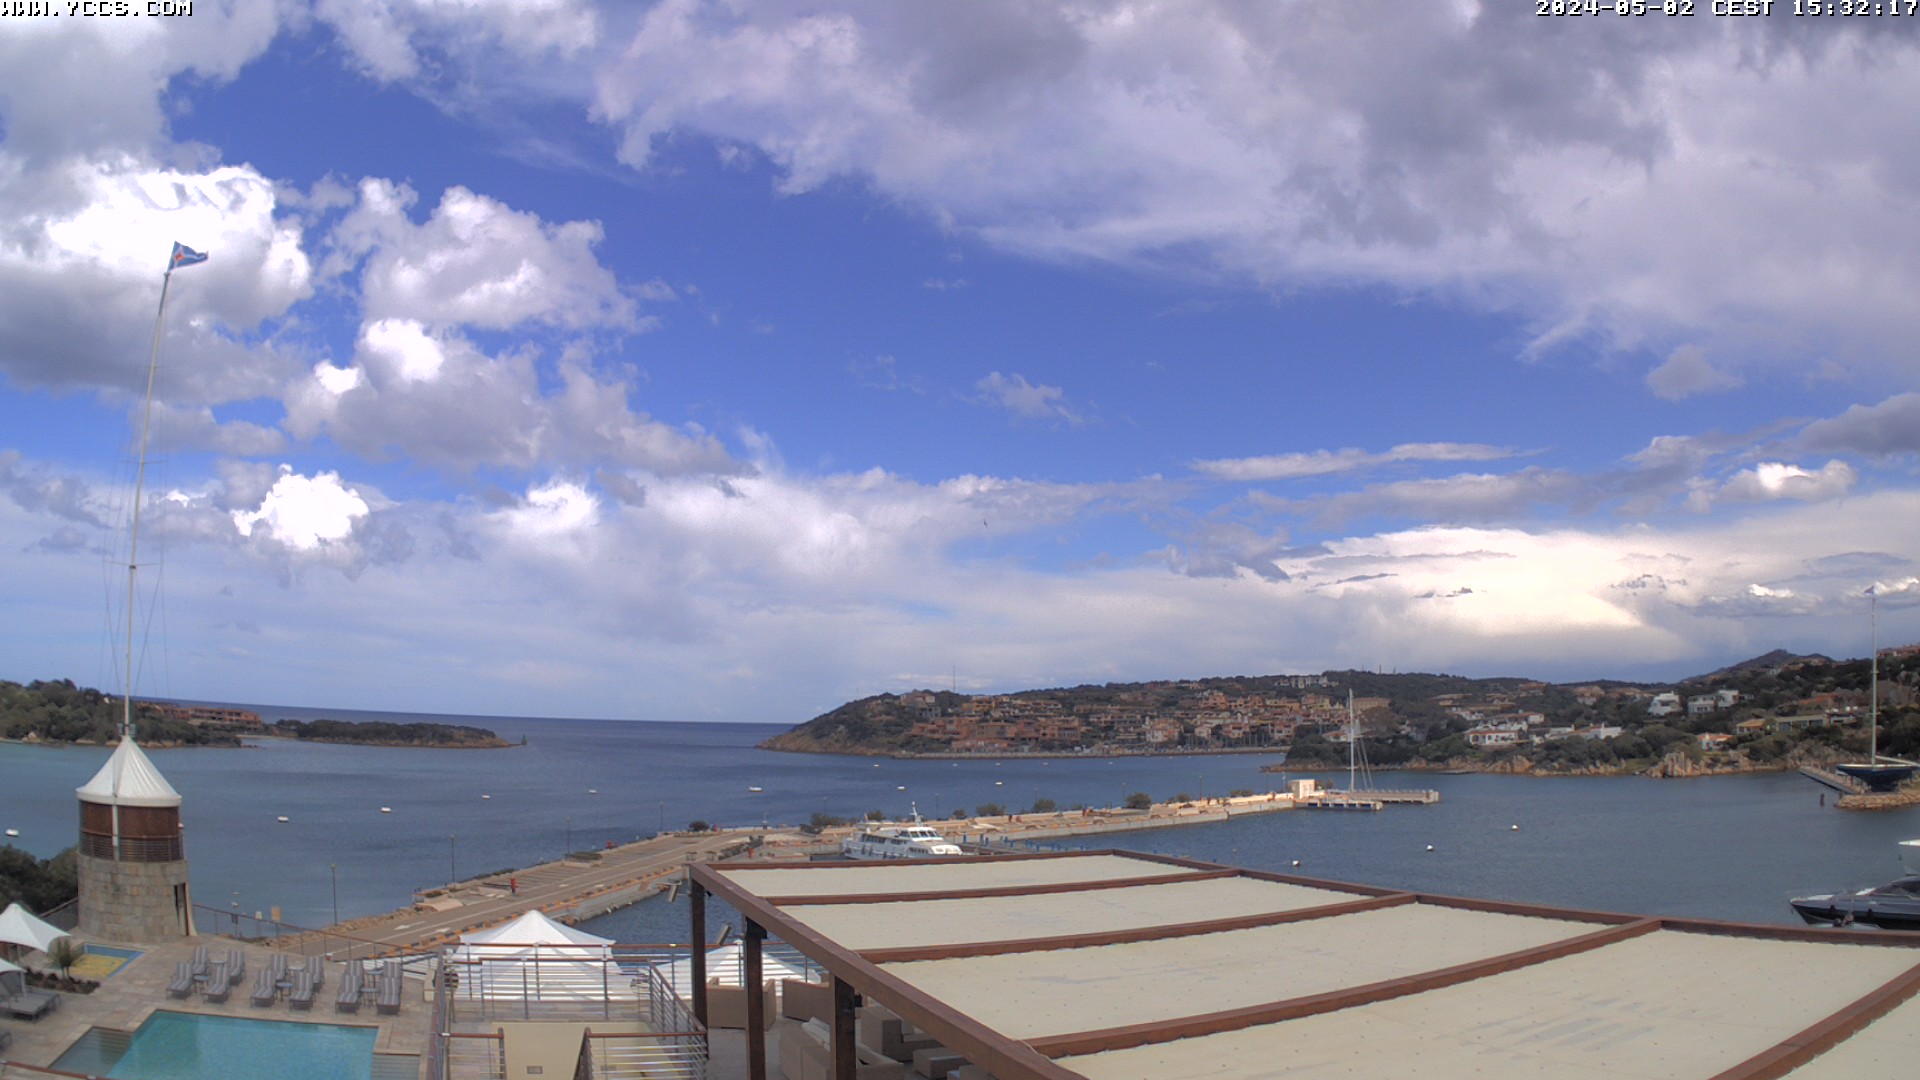 Sardinia island webcam online